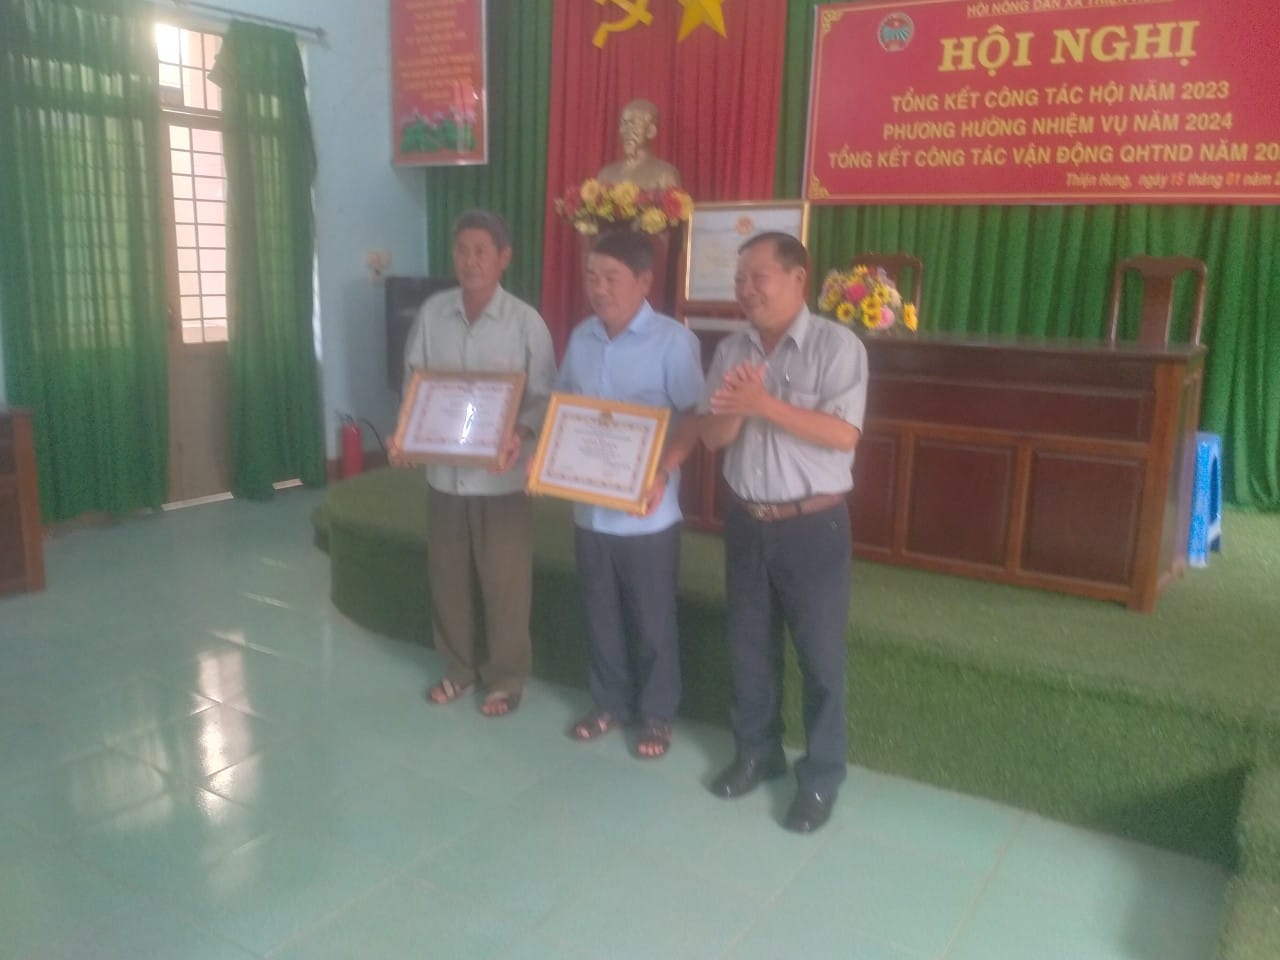 Đ/c Mai Văn Sang, HUV - Chủ tịch HND huyện trao khen thưởng cho tập thể và cá nhân hoàn thành xuất sắc năm 2023